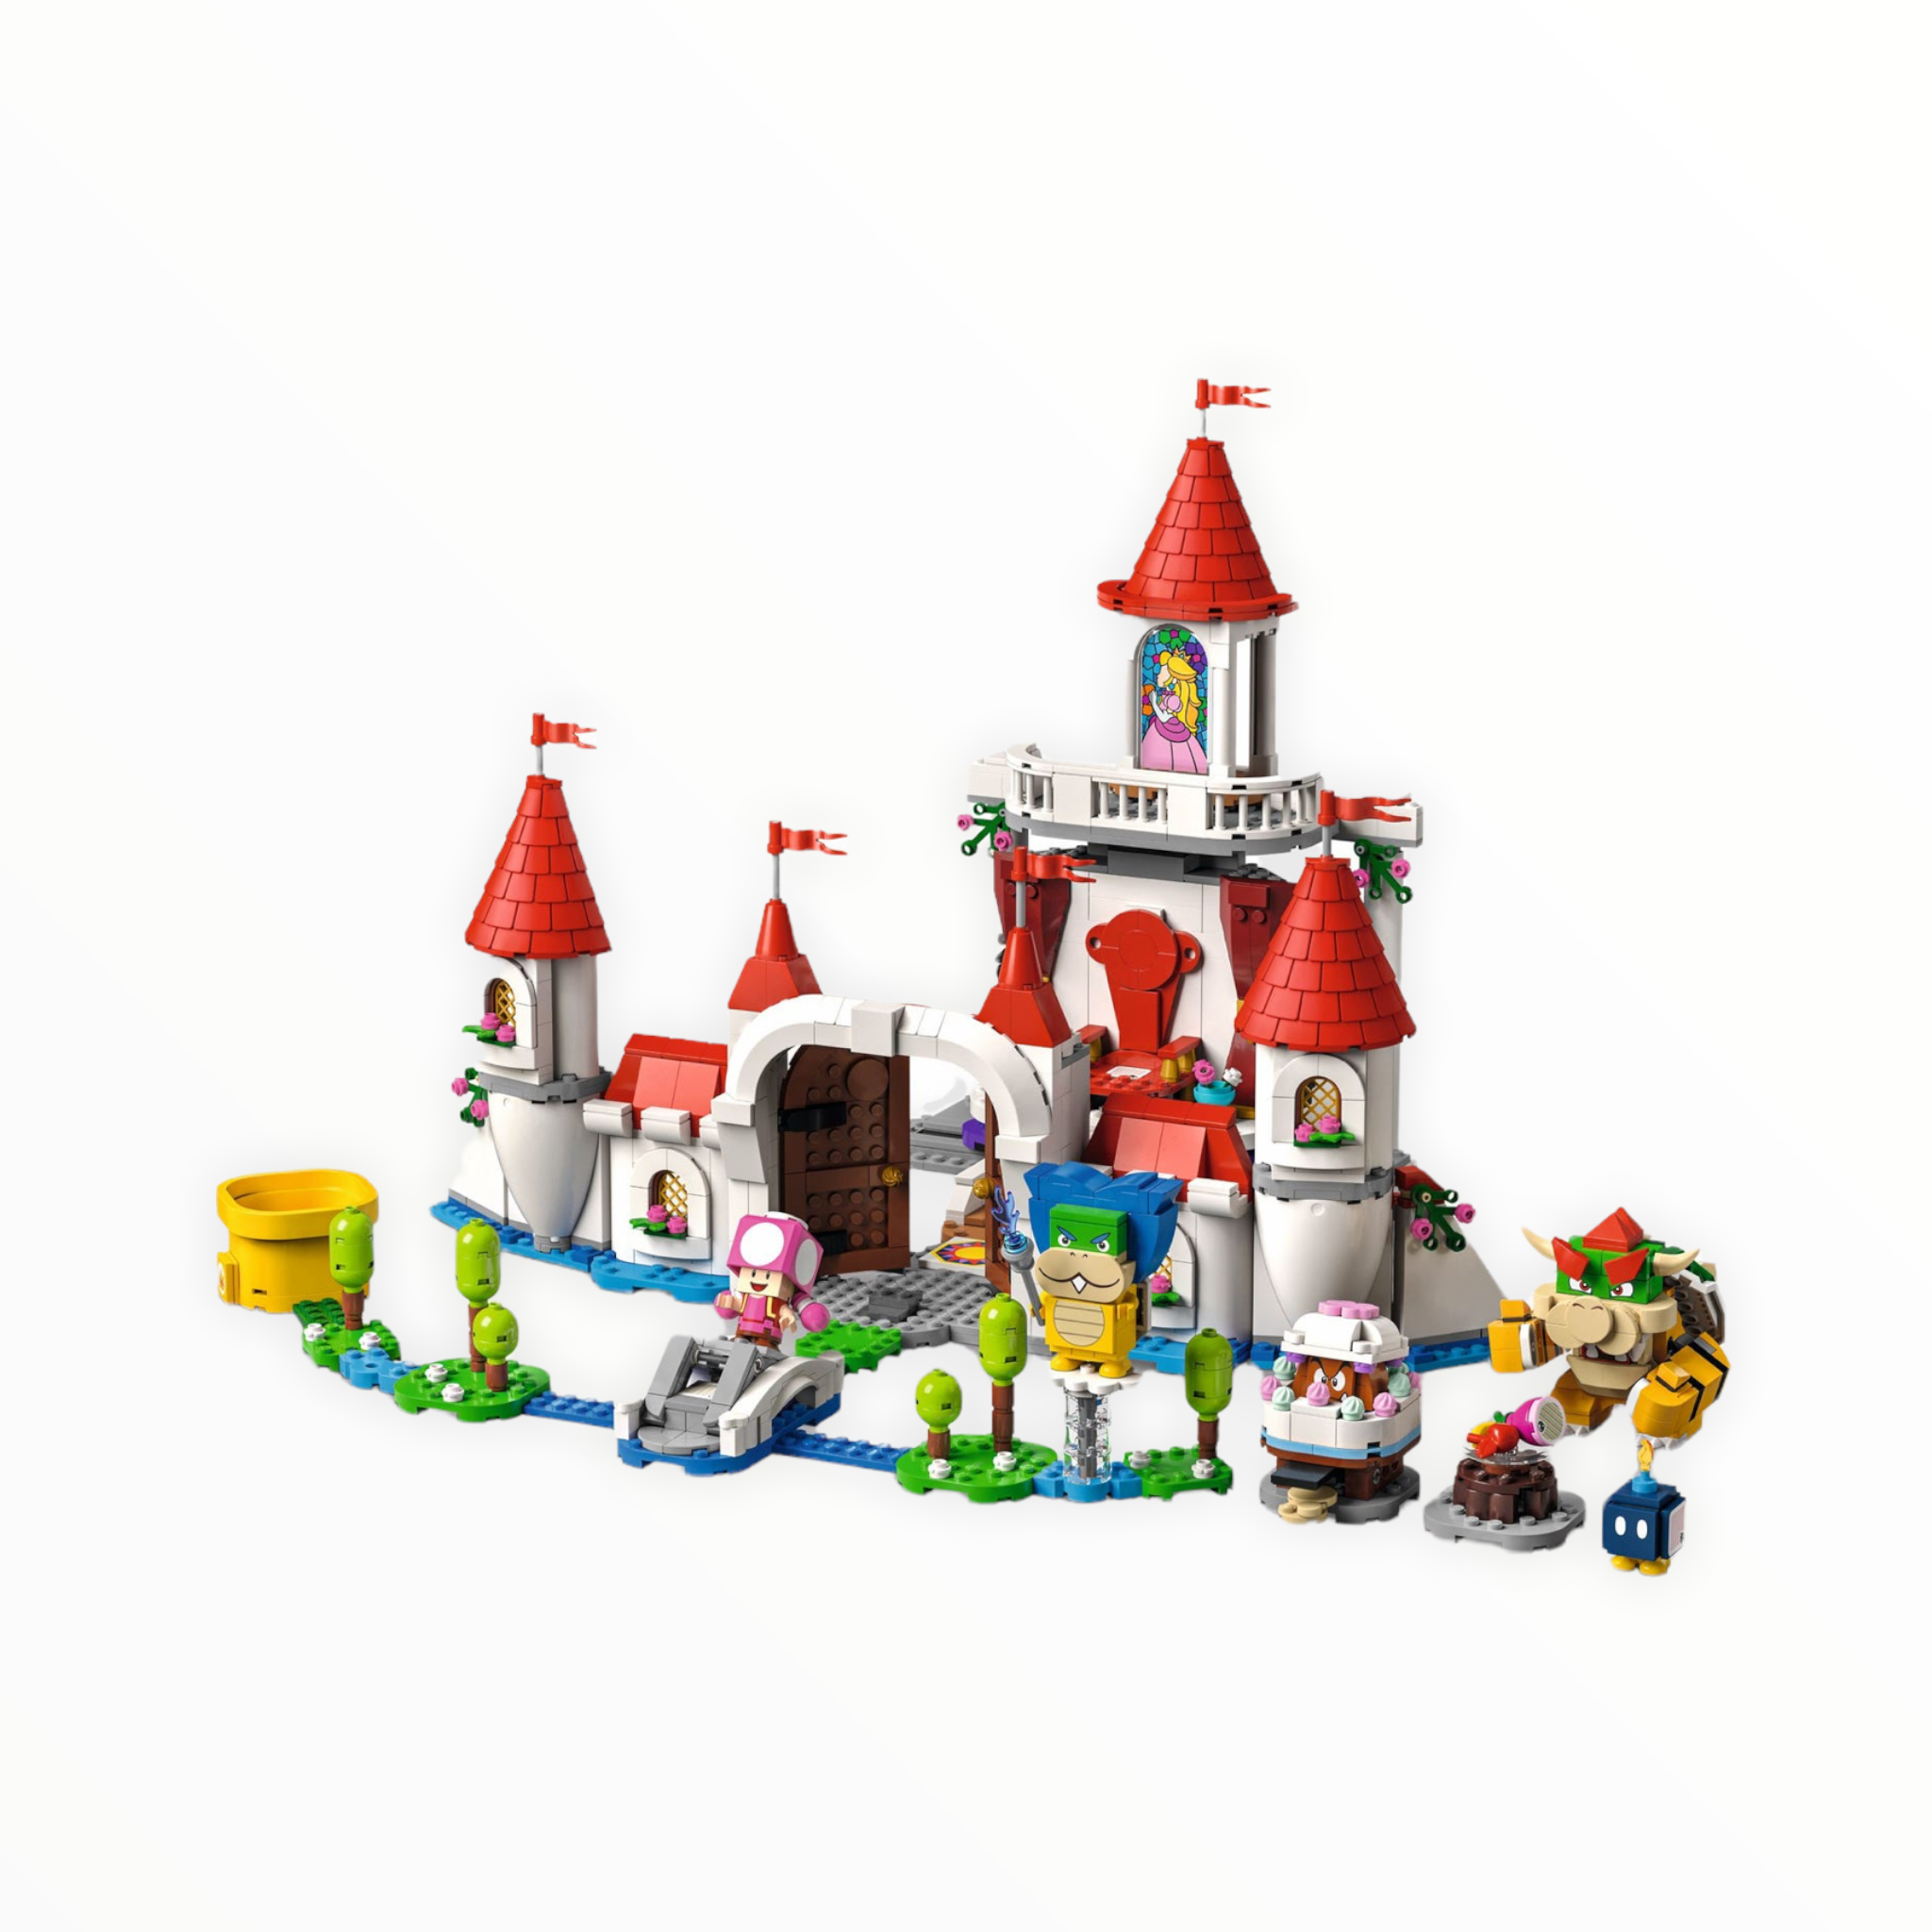 71408 Super Mario Peach’s Castle Expansion Set